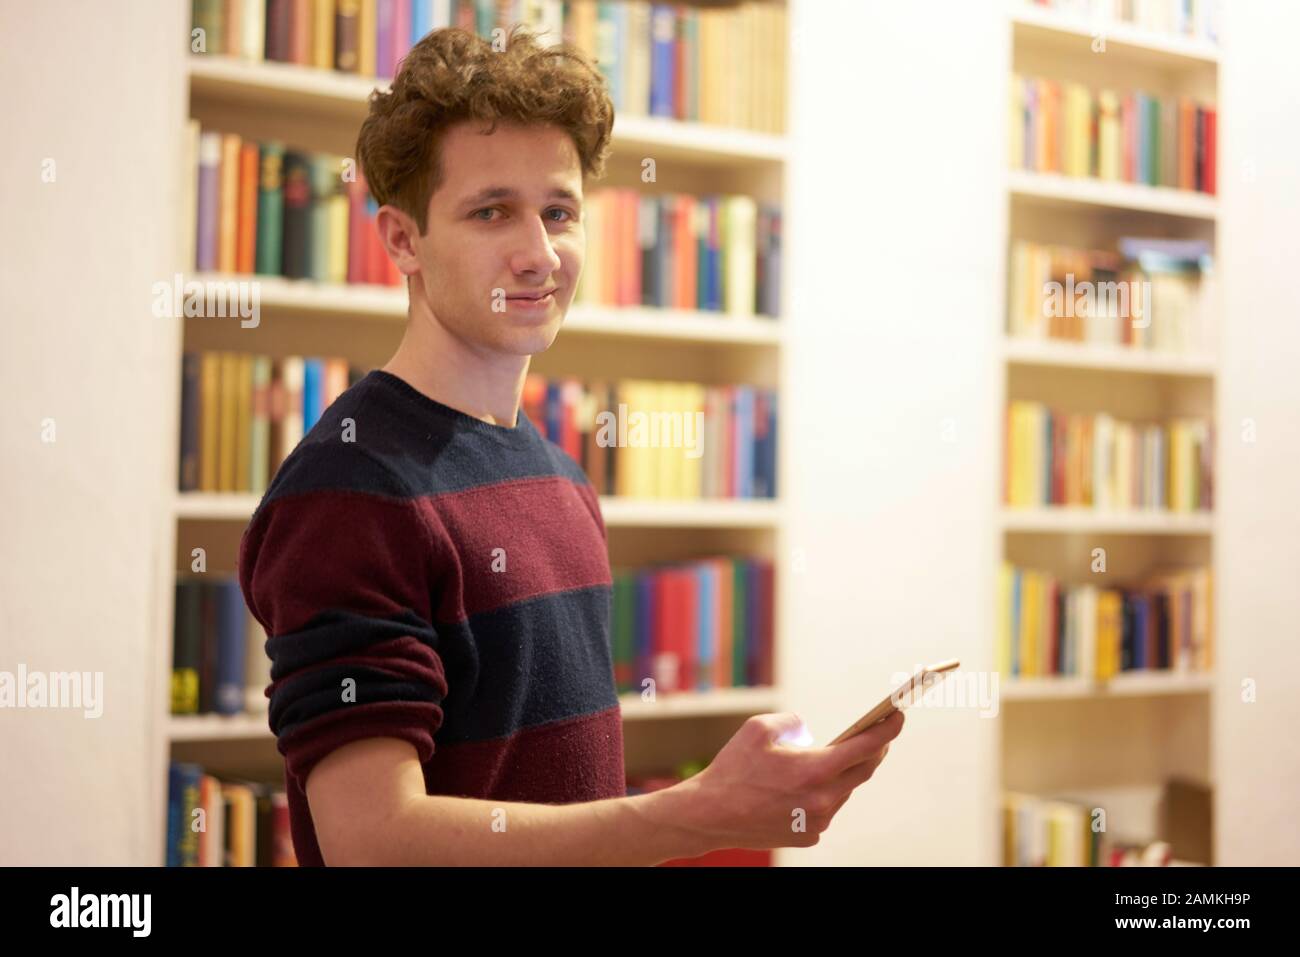 Adolescente en la biblioteca permaneciendo delante de la estantería con el smartphone en su mano Foto de stock